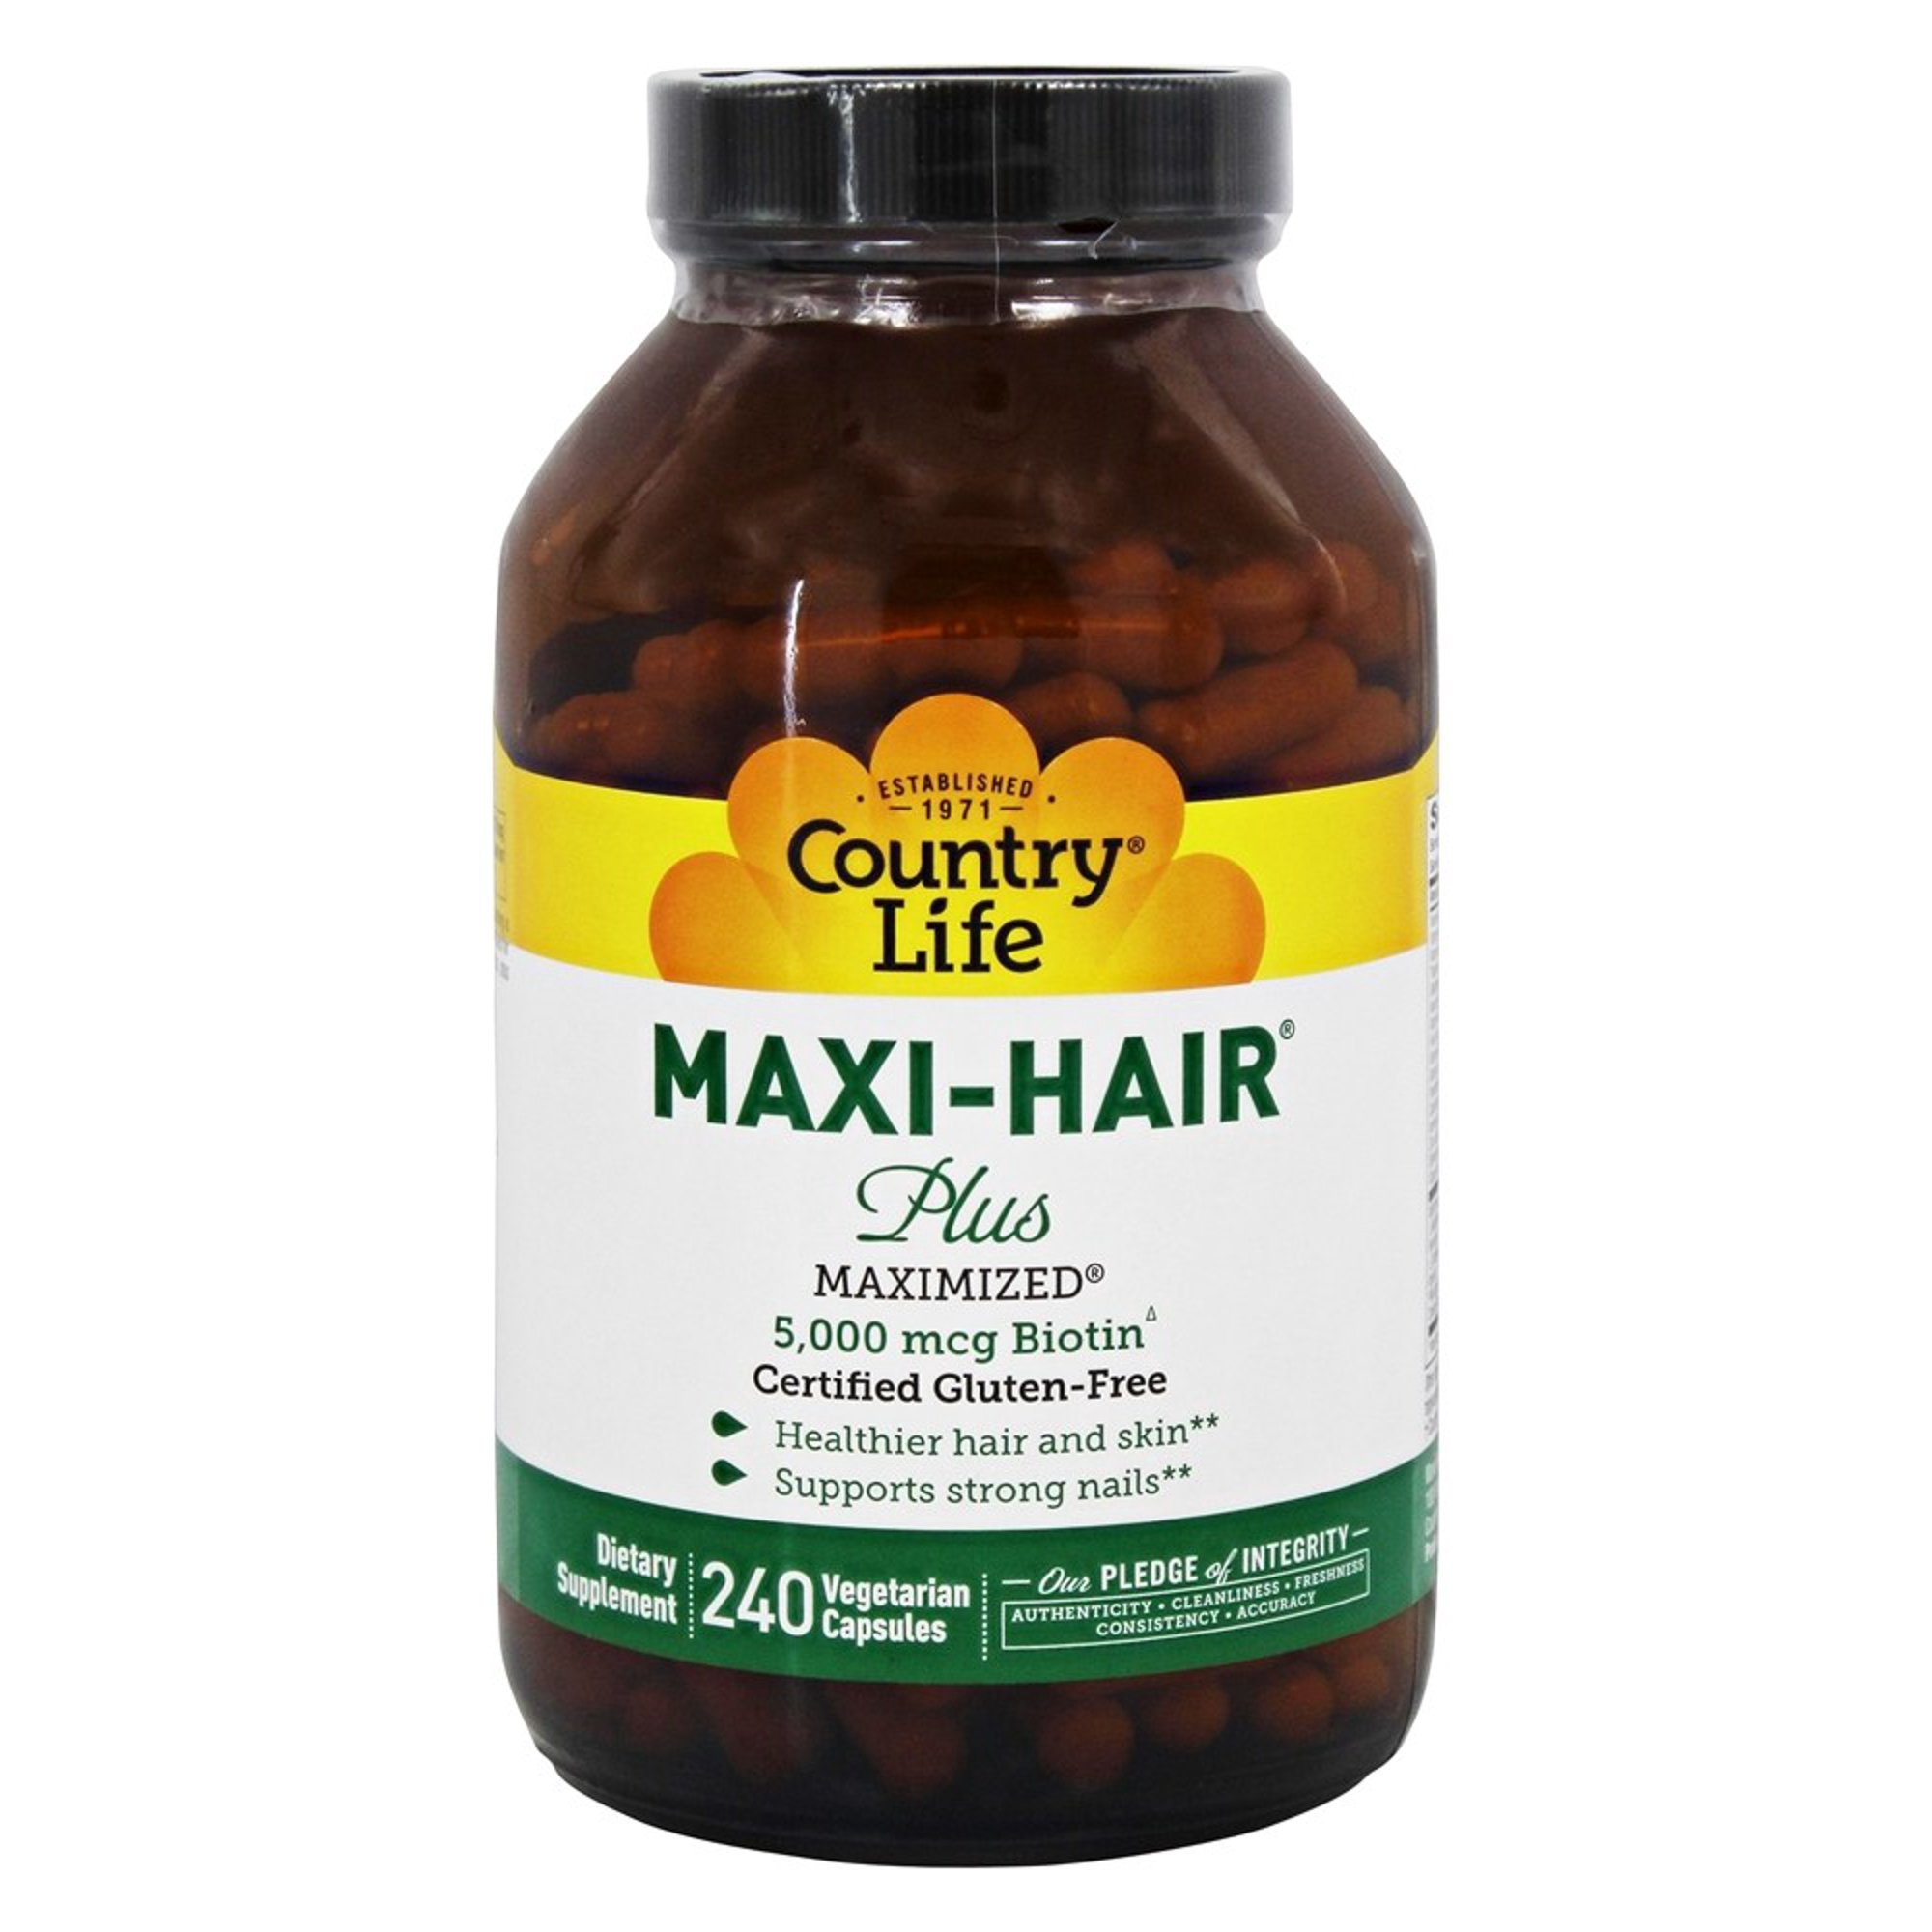 Maxi hair plus. Country Life Maxi hair Plus. Картинка Country Life, Maxi-hair. Картинка Maxi hair. Maxi hair.